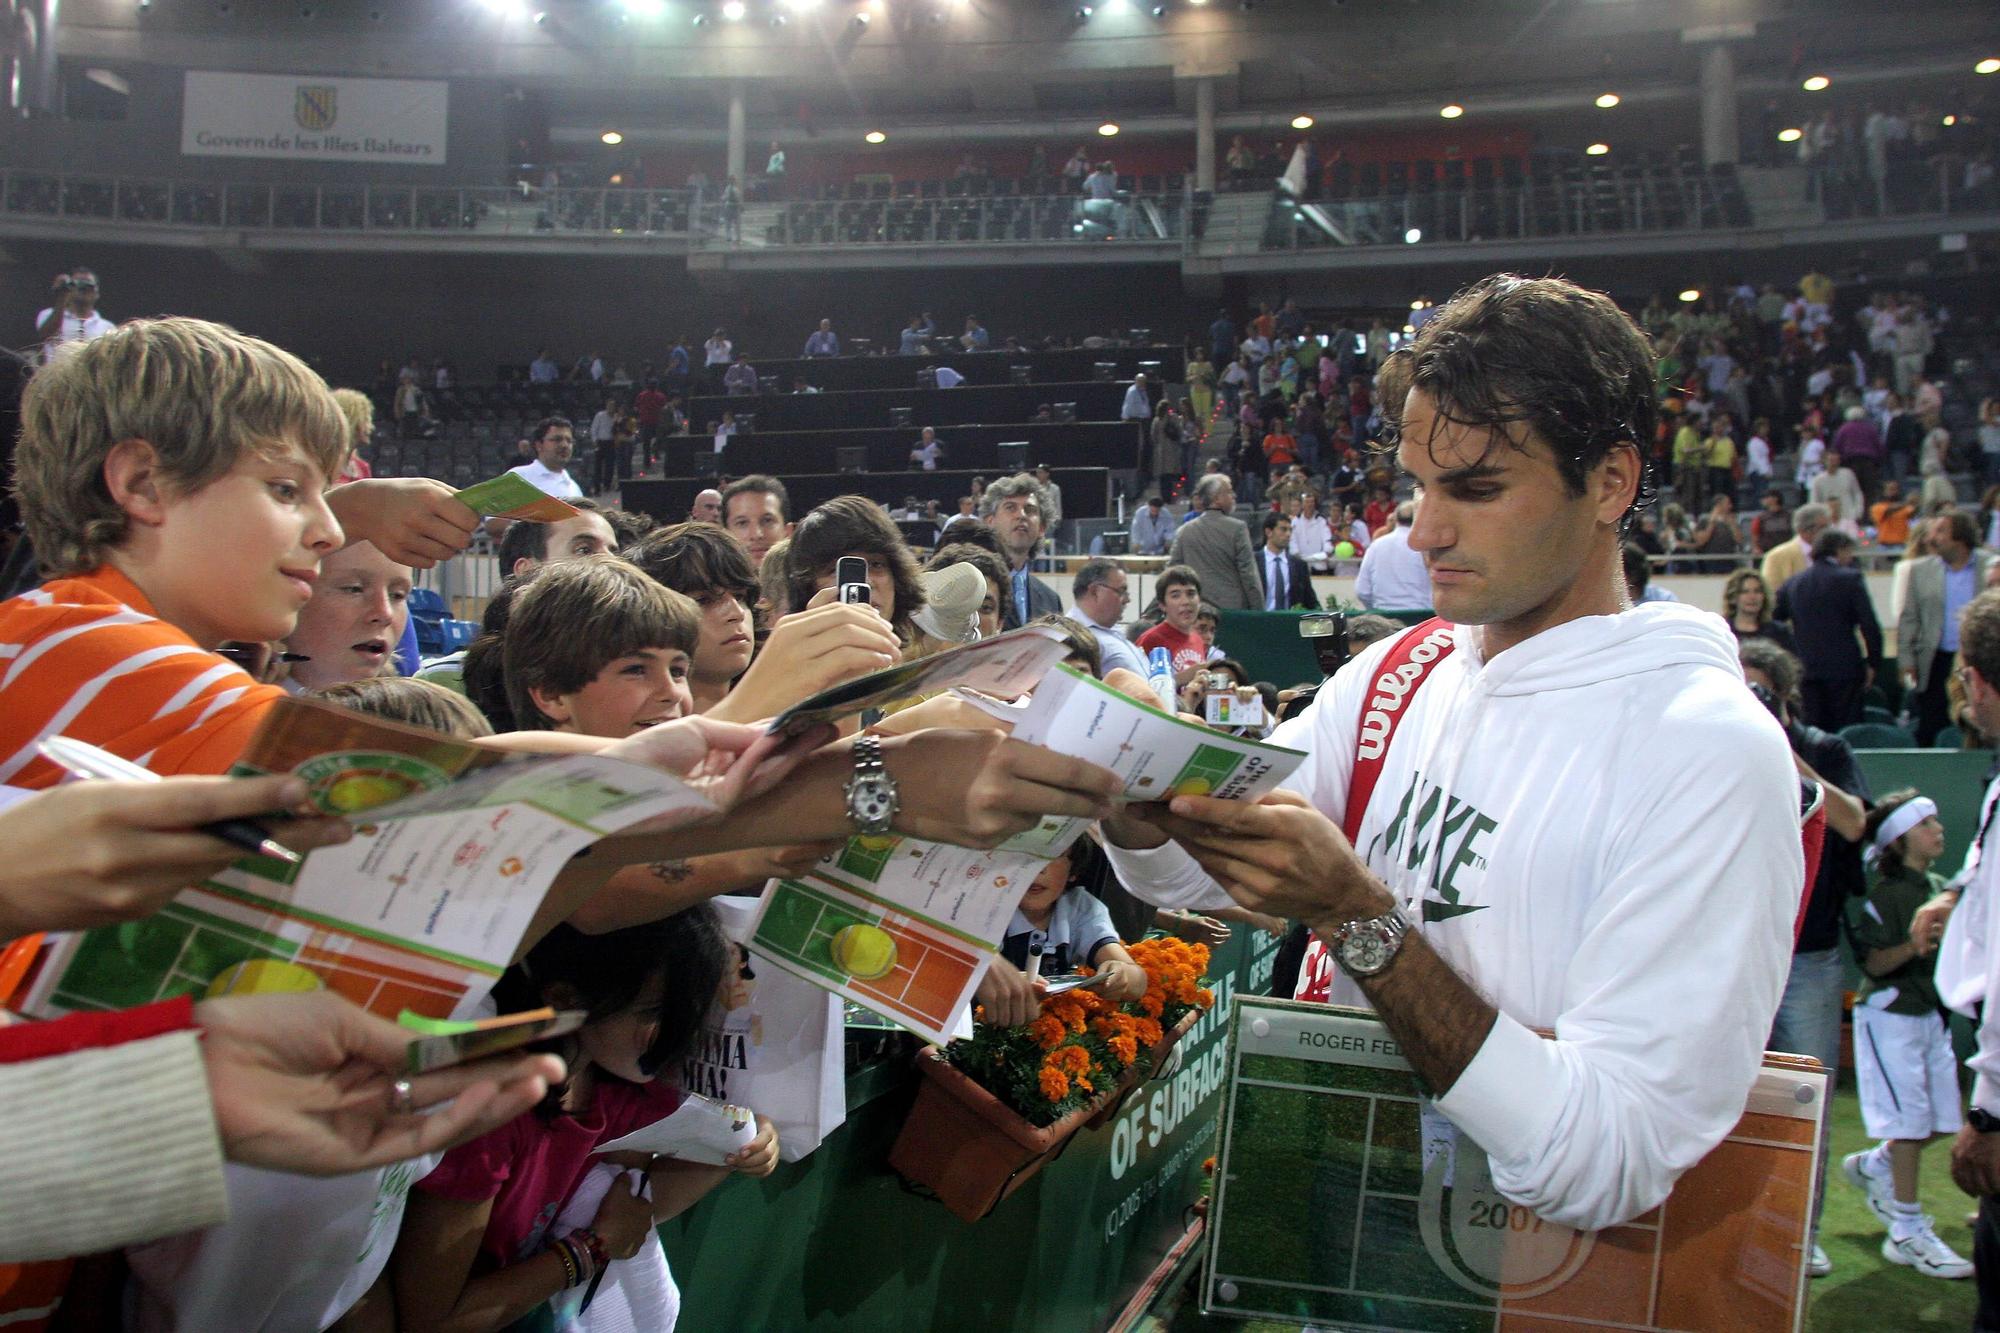 El duelo más atípico entre Nadal y Federer